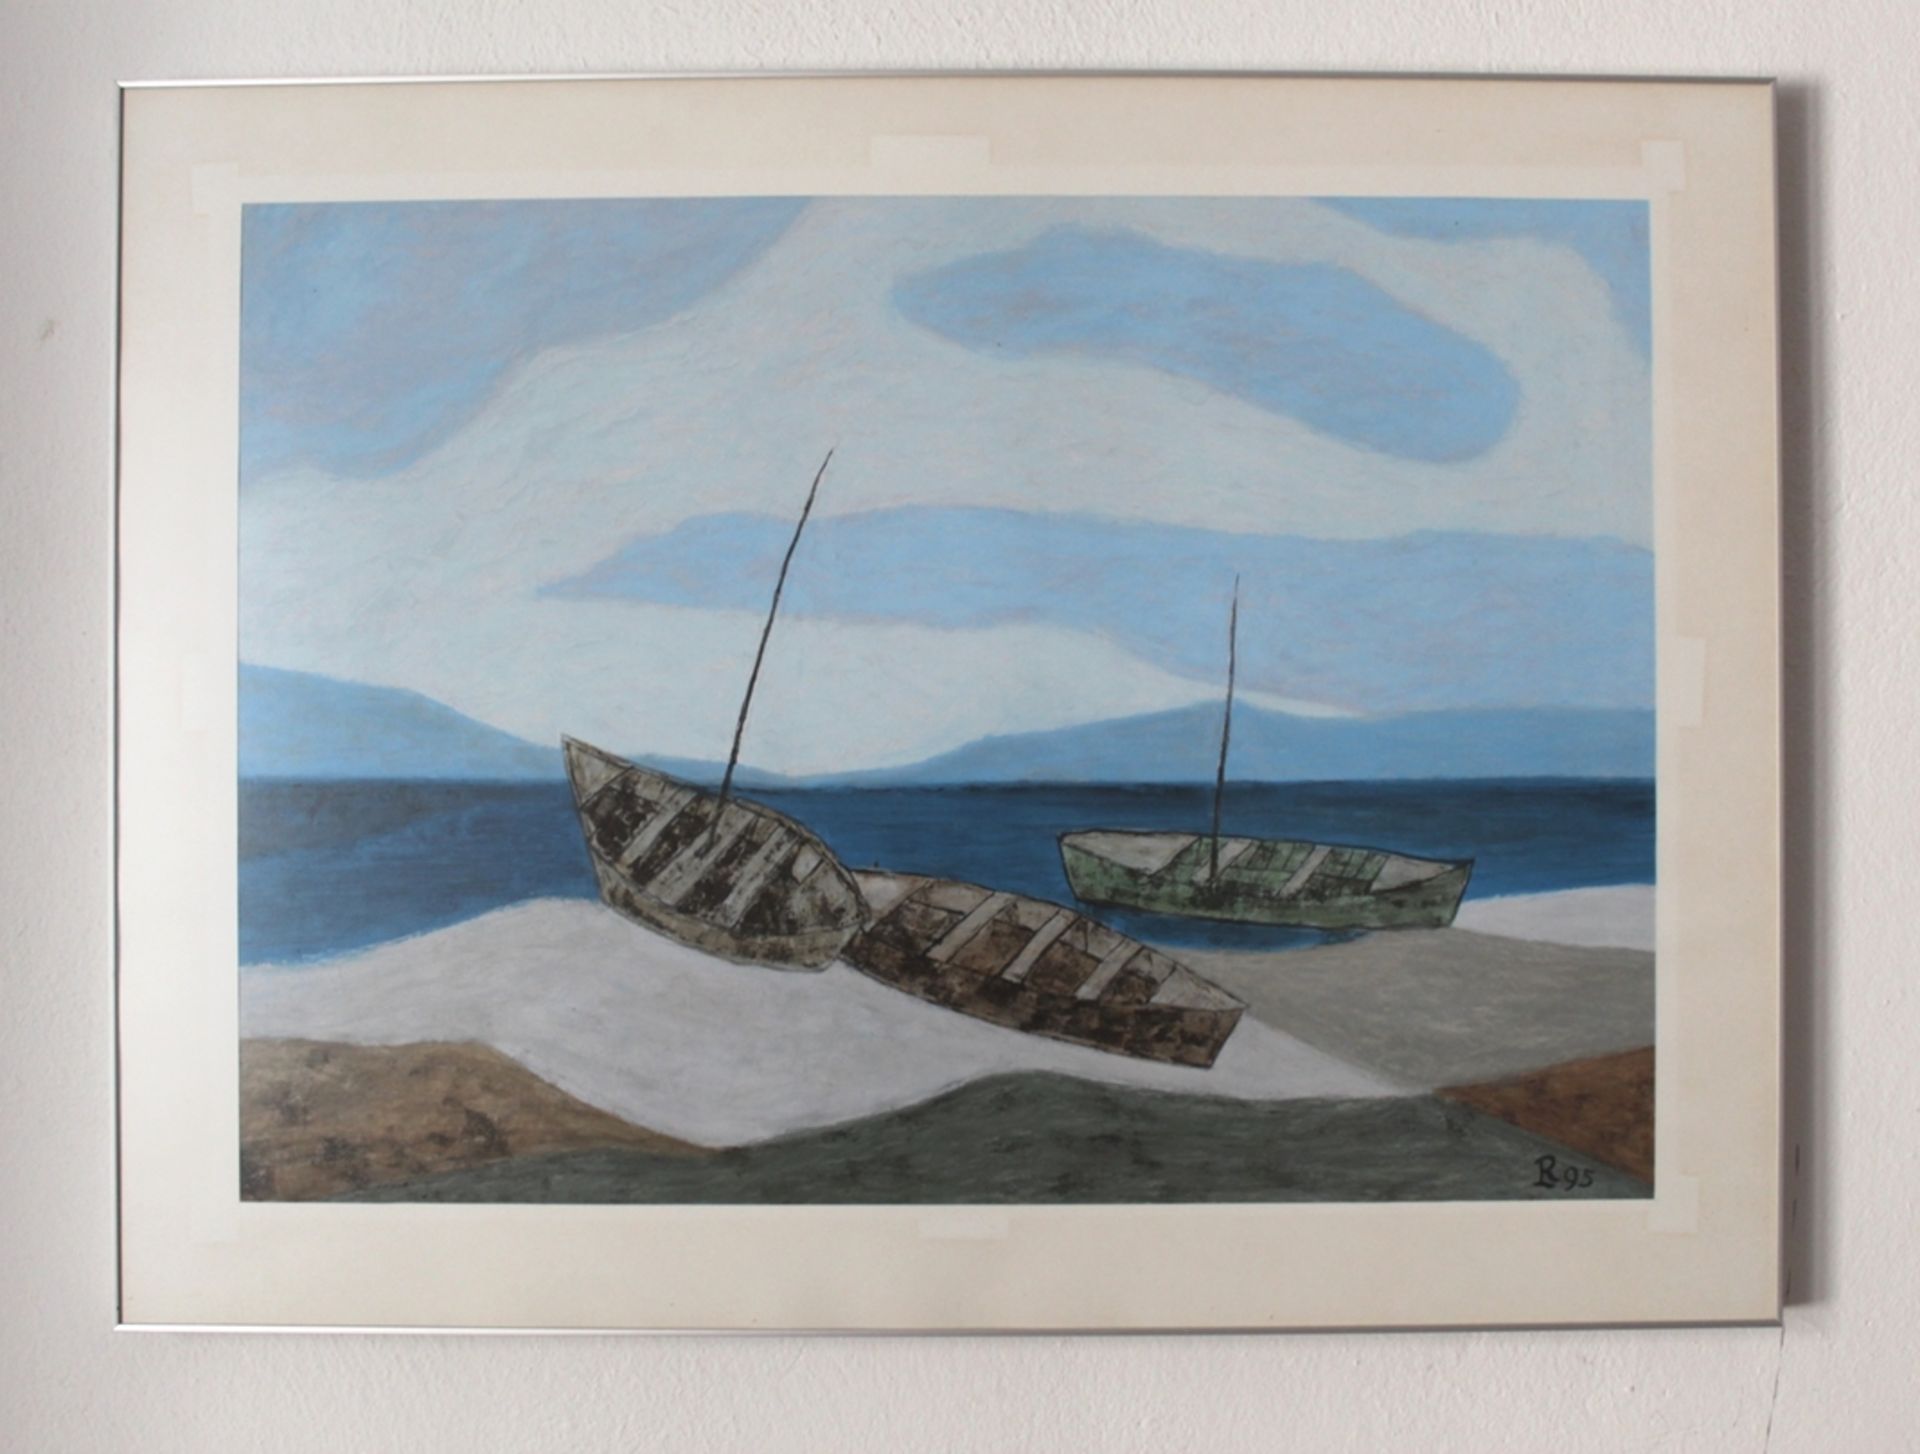 Gemälde "Boote am Strand - 95", Künstler: Leopold Reiser-Vaney, Öl auf Leinwand, Gerahmt unter Glas